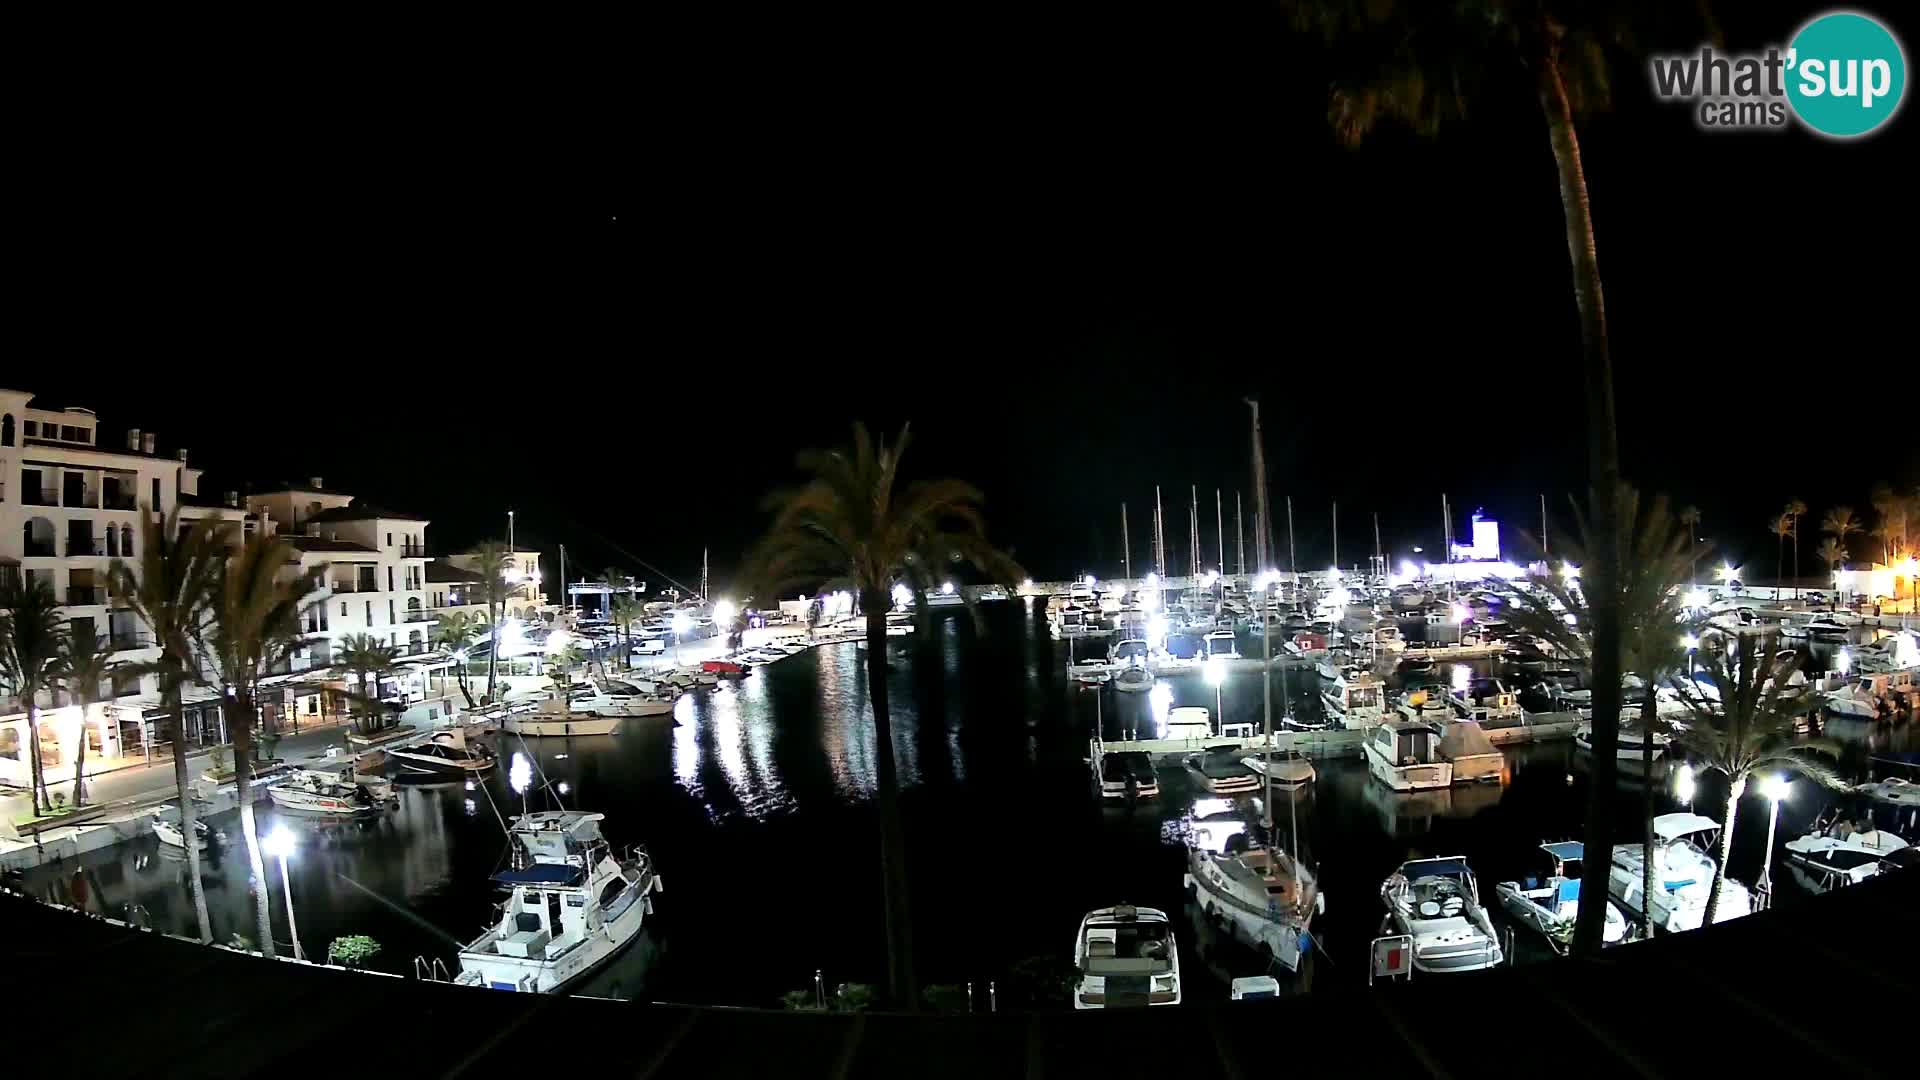 Puerto de la Duquesa webcam – Marina